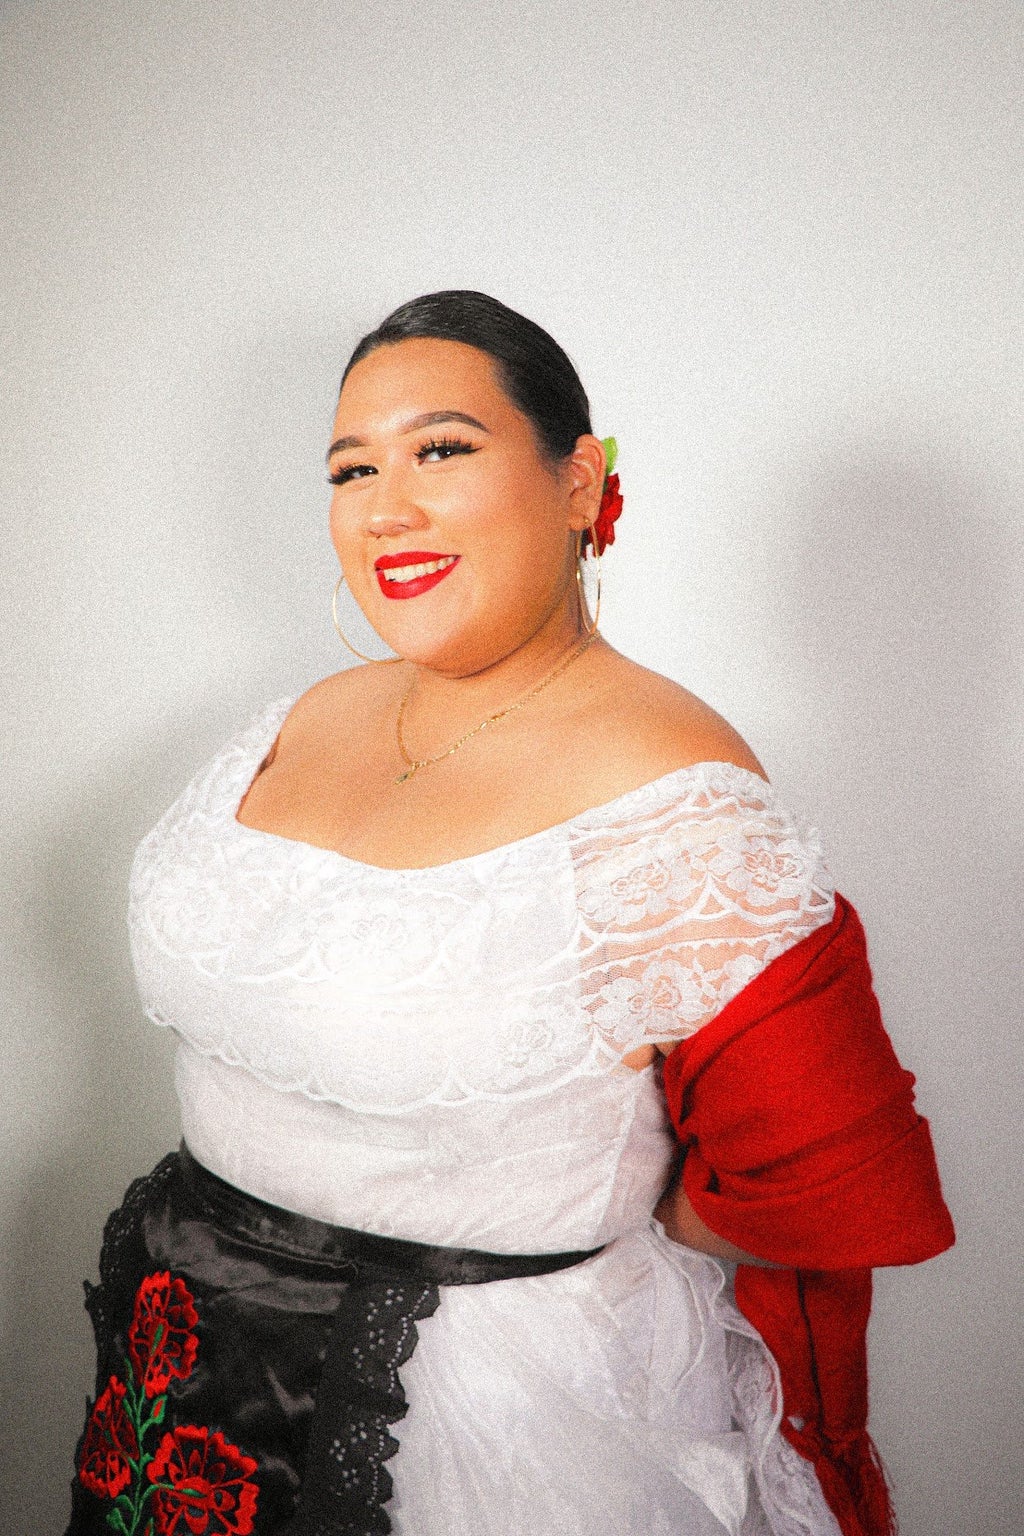 Alejandra Balbuena posing in her folklorico costume